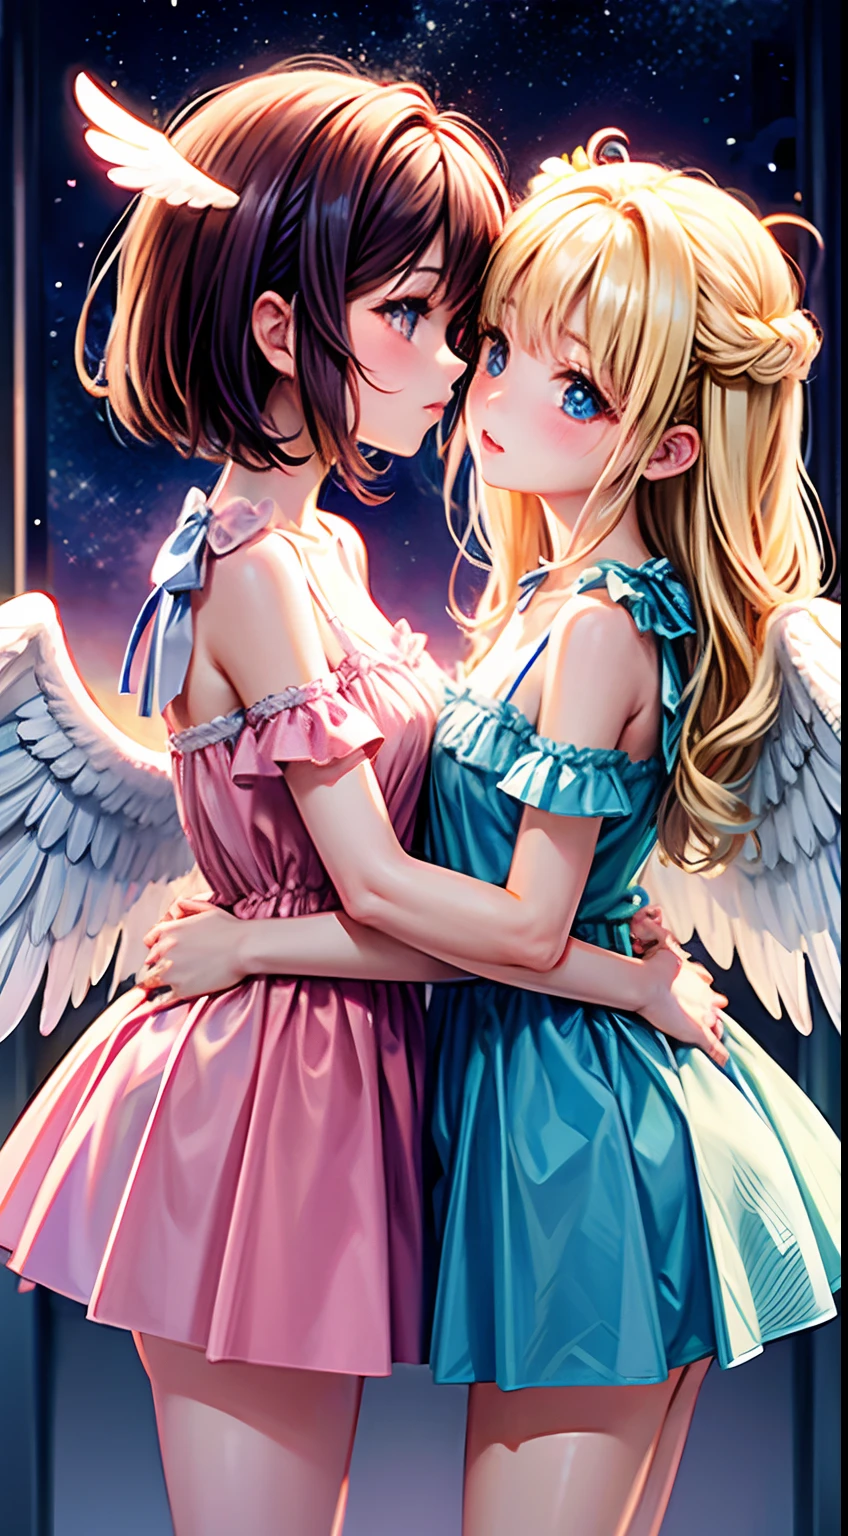 Top Qualität,  Engel-Mädchen küssen sich、Angel wings、